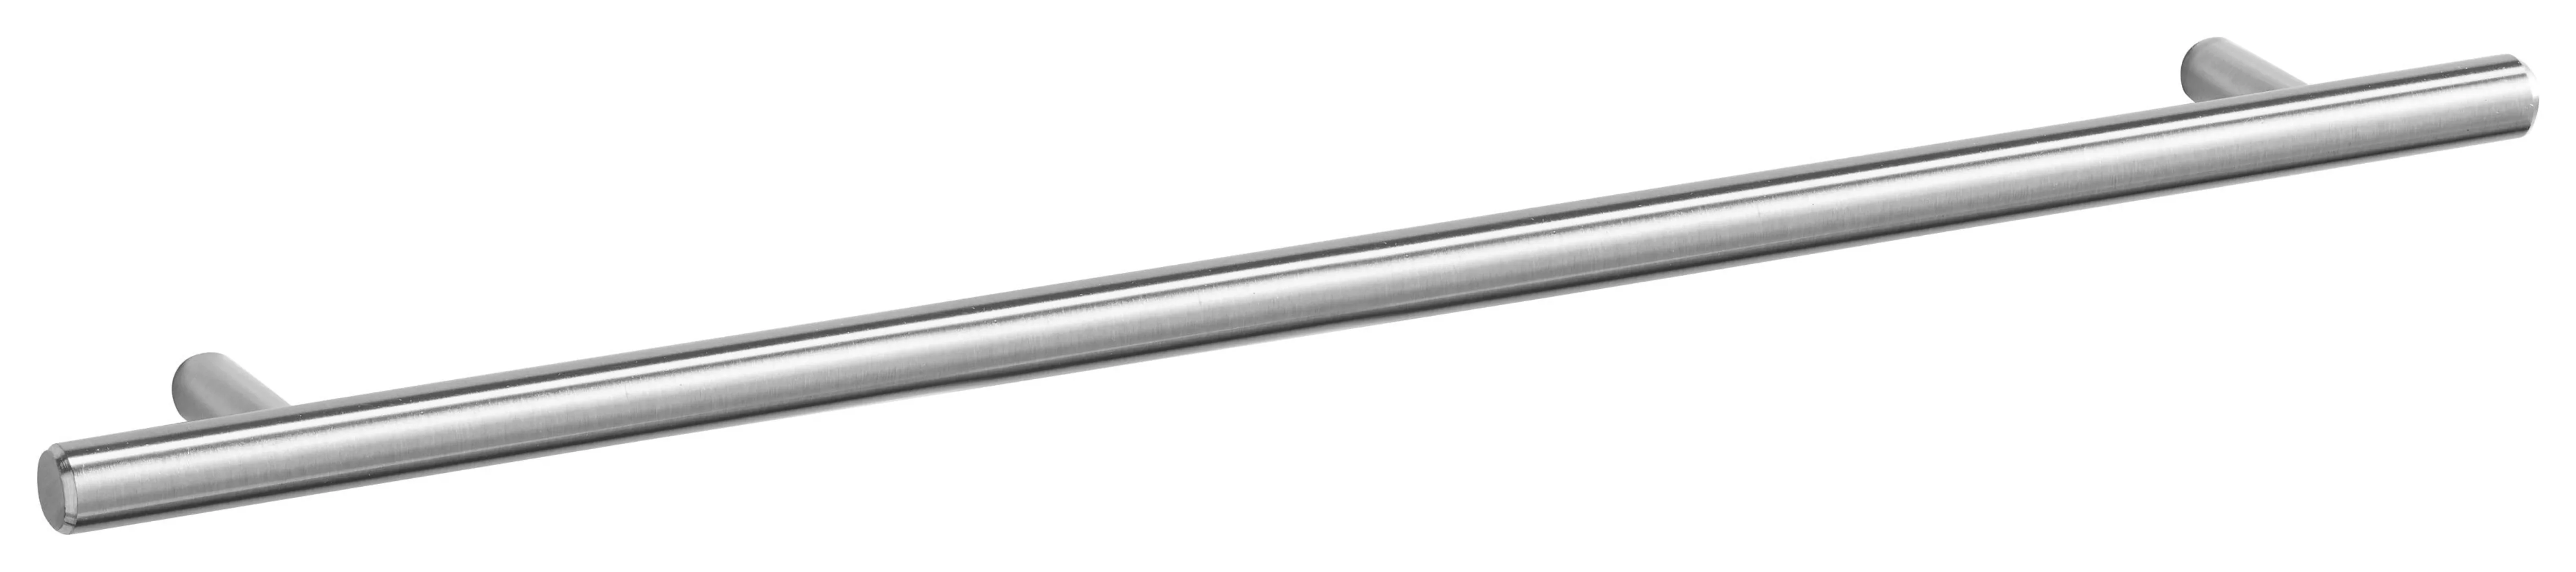 OPTIFIT Hängeschrank "Bern", Breite 40 cm, 70 cm hoch, mit 1 Tür, mit Metal günstig online kaufen